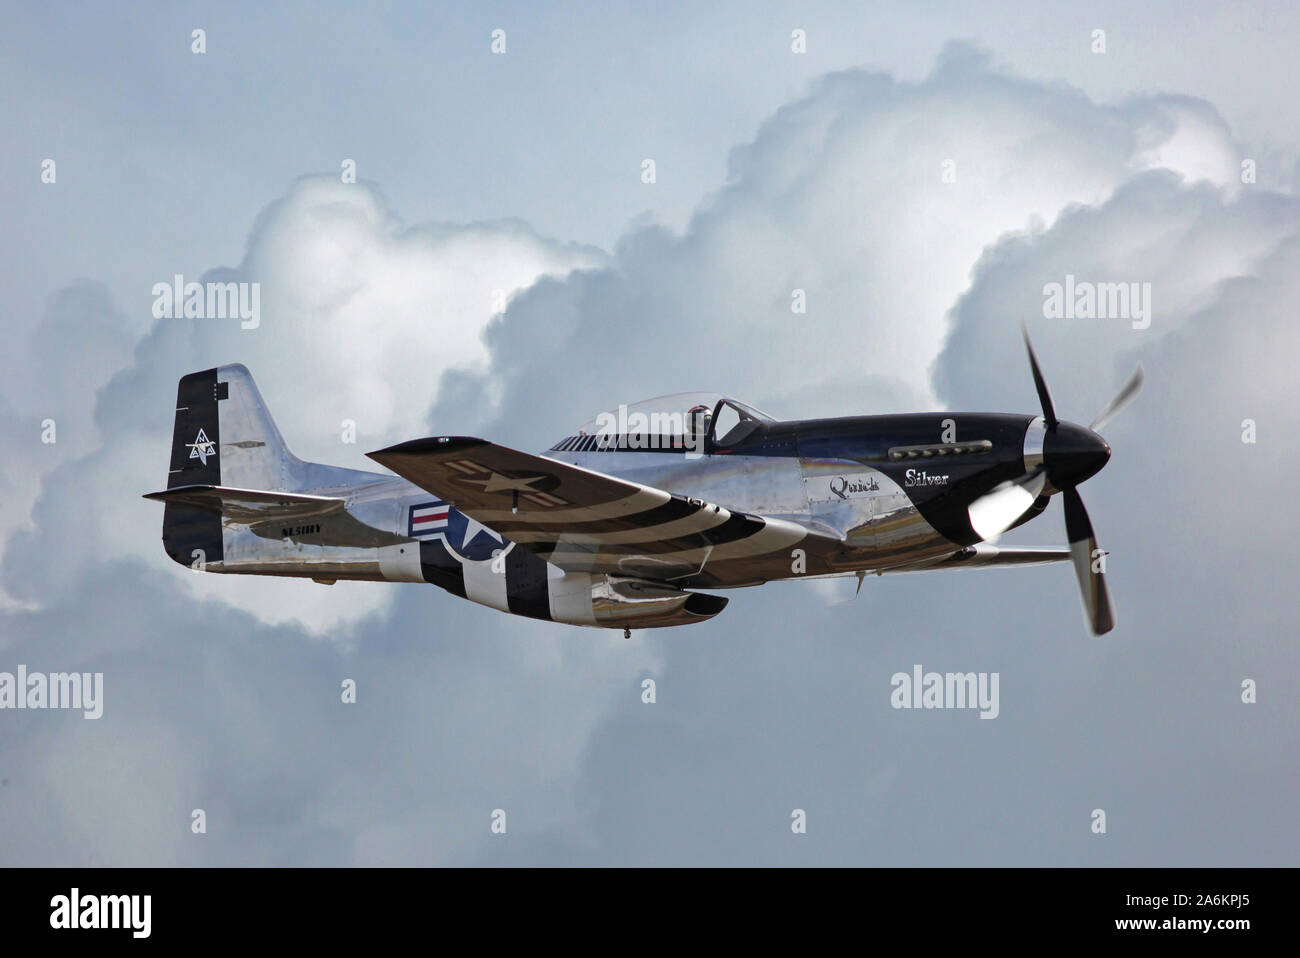 A la época de la Segunda Guerra Mundial P-51 Mustang Fighter vuela a través de ondulantes nubes de tormenta. Foto de stock